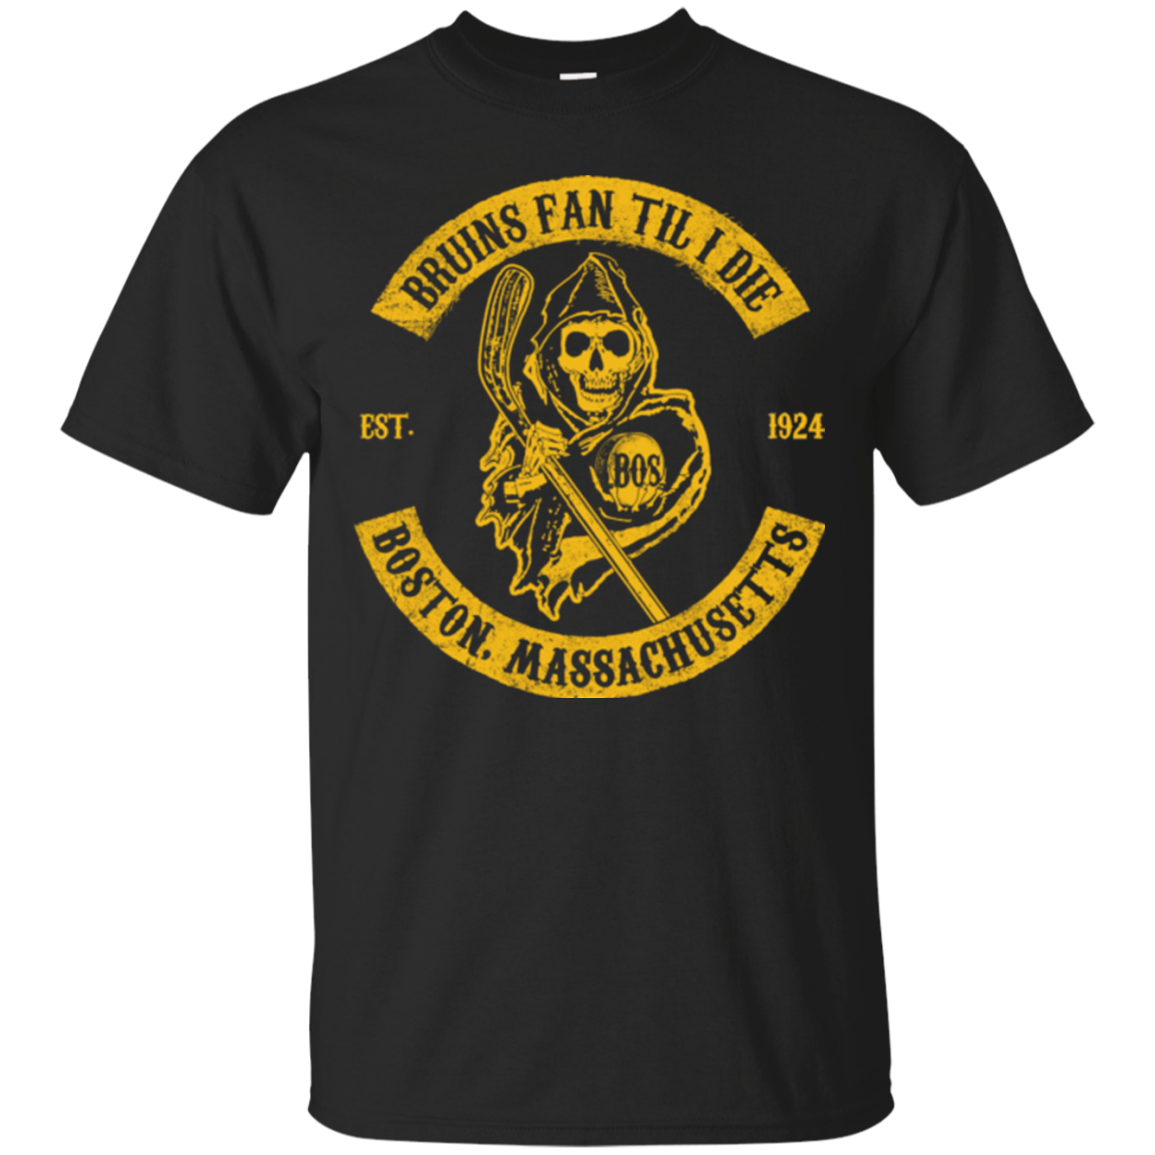 Boston Bruins Shirts Bruins Fan Til I Die - Teesmiley